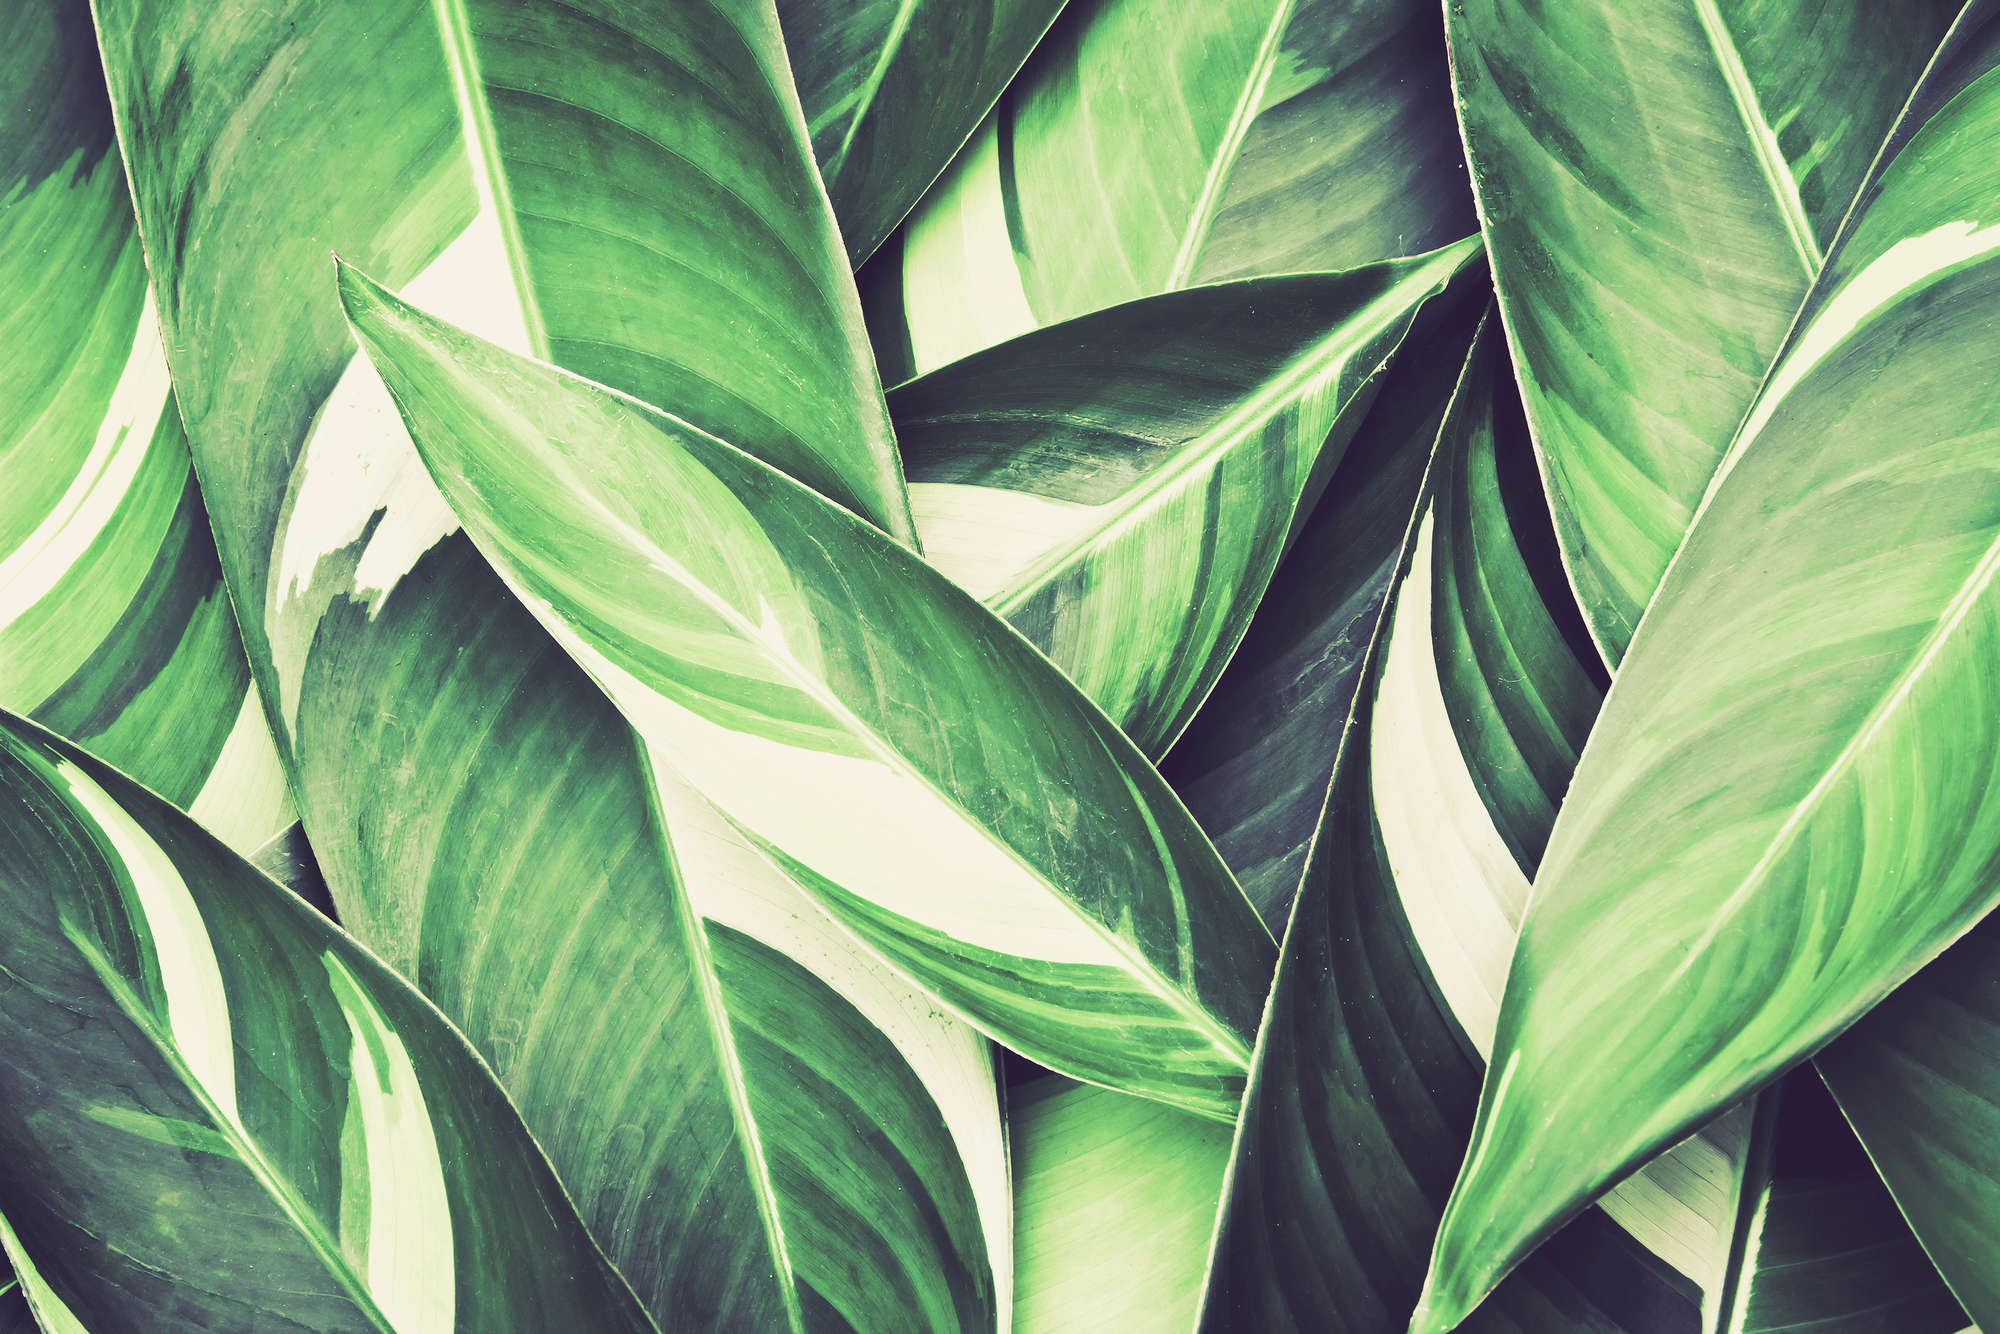             Nature mural palm leaves motif green on matt smooth fleece
        